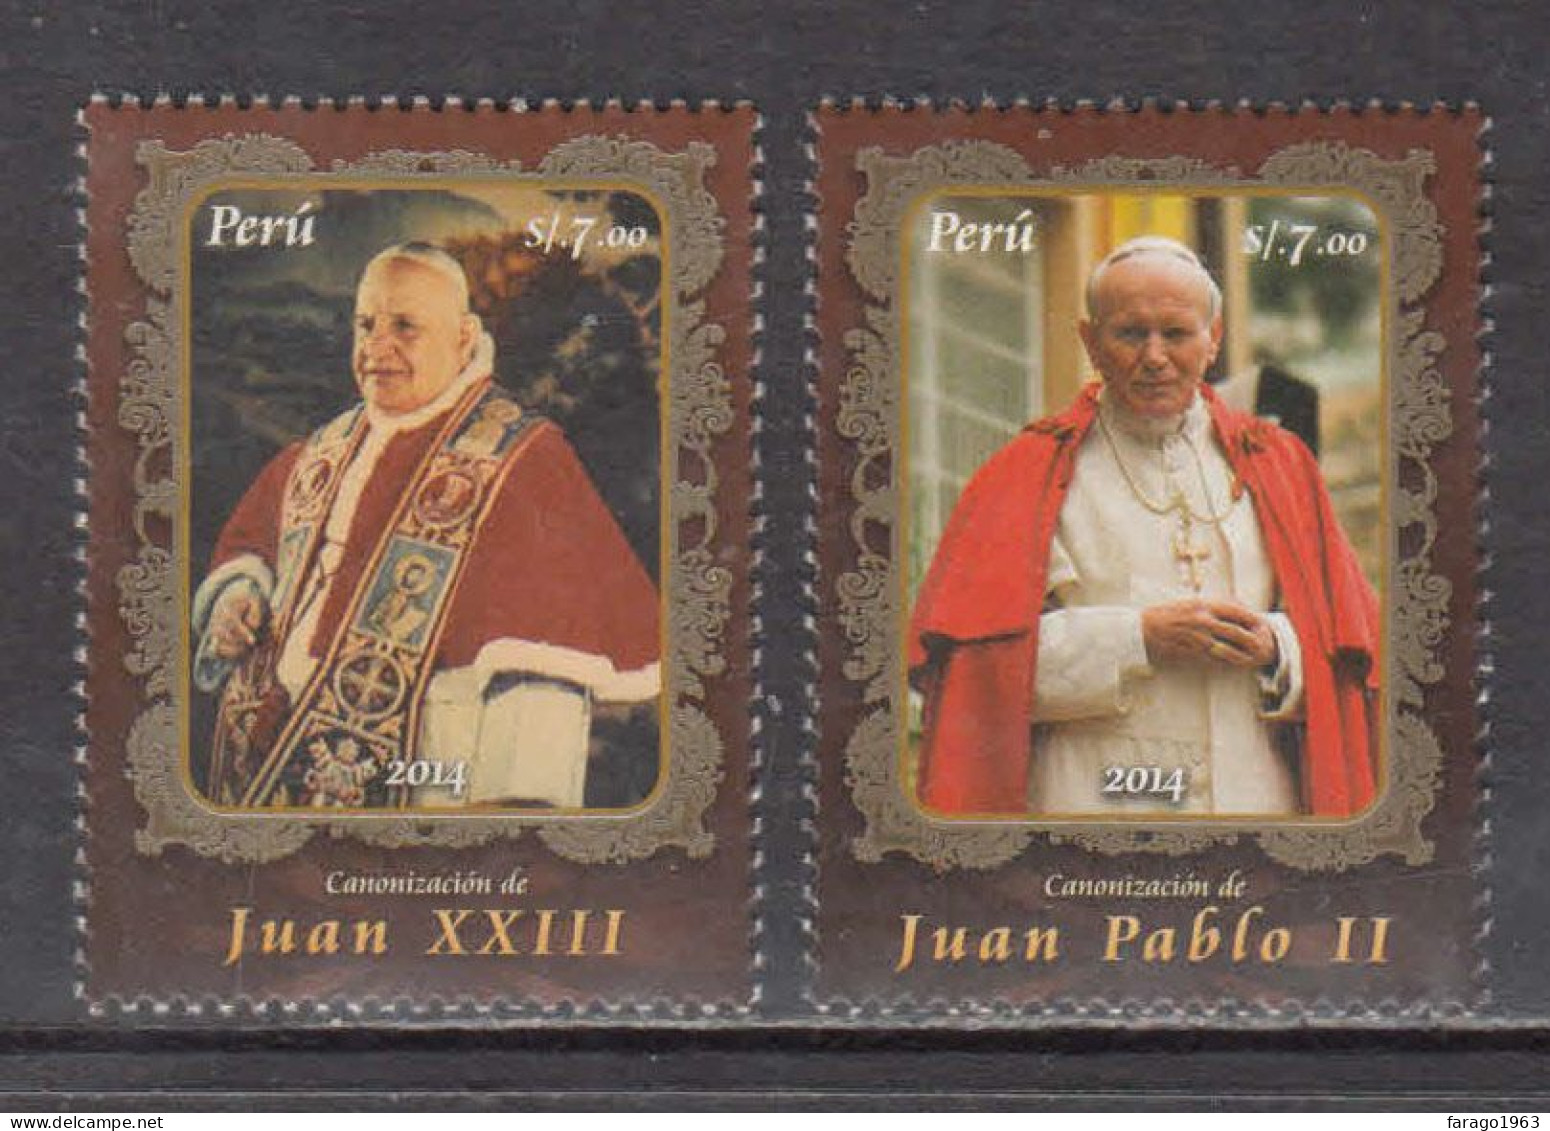 2014 Peru Popes Pope John Paul II Complete Set Of 2  MNH - Peru